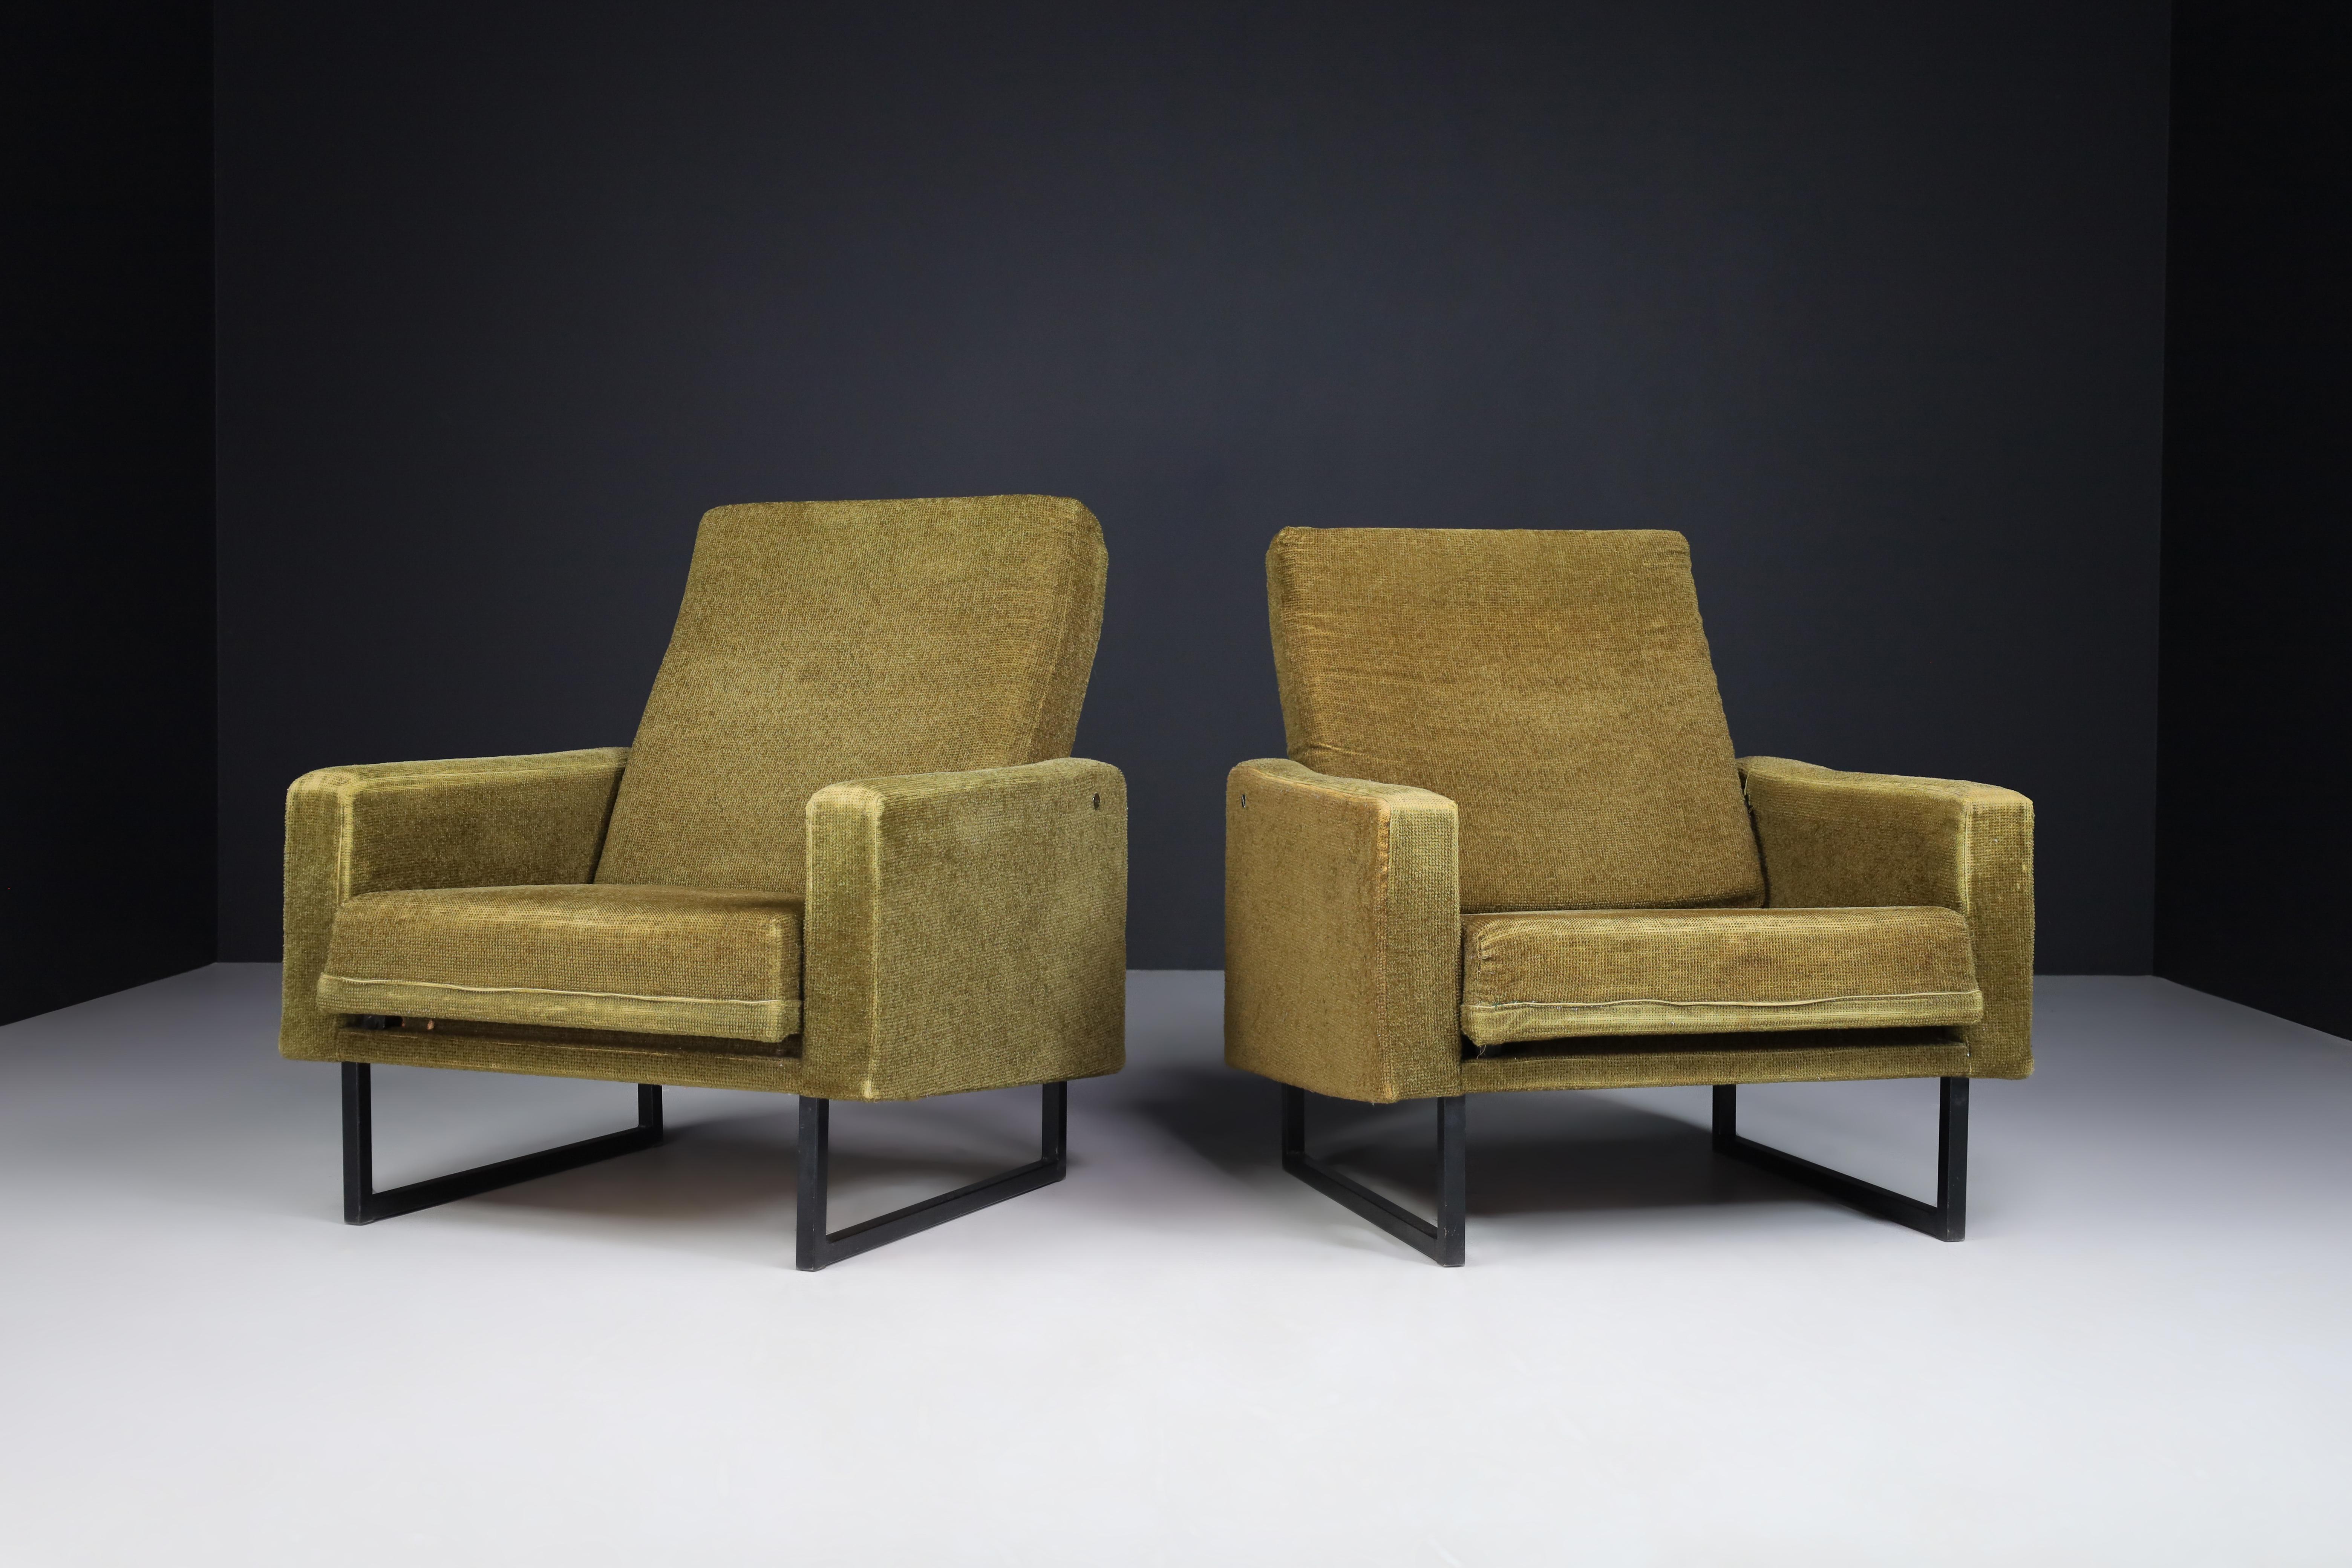 Une belle paire de fauteuils français vintage extrêmement confortables. Ils ont été fabriqués et conçus par René Jean Caillette pour Steiner, France 1963.

Le tissu vert d'origine dans est une bonne forme vintage, ils sont très bien construits et